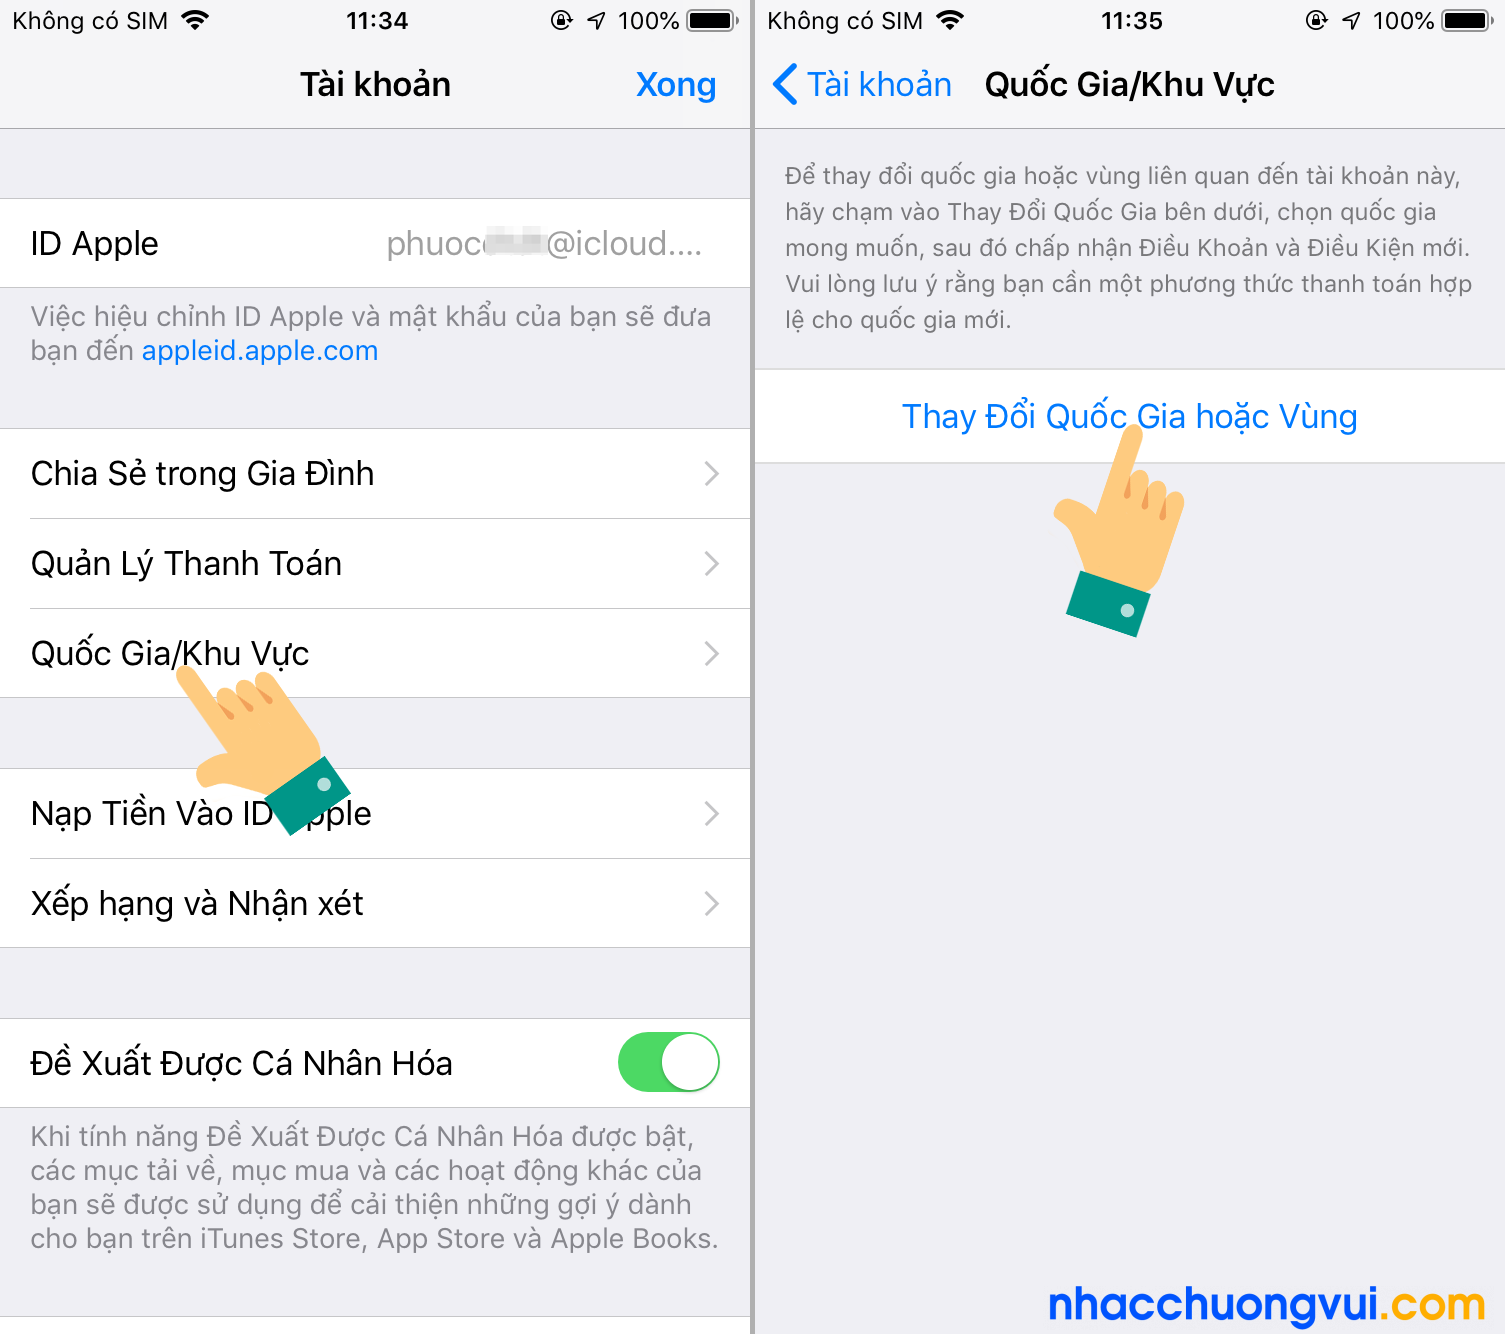 Cách tải Tik Tok Trung Quốc cho iPhone